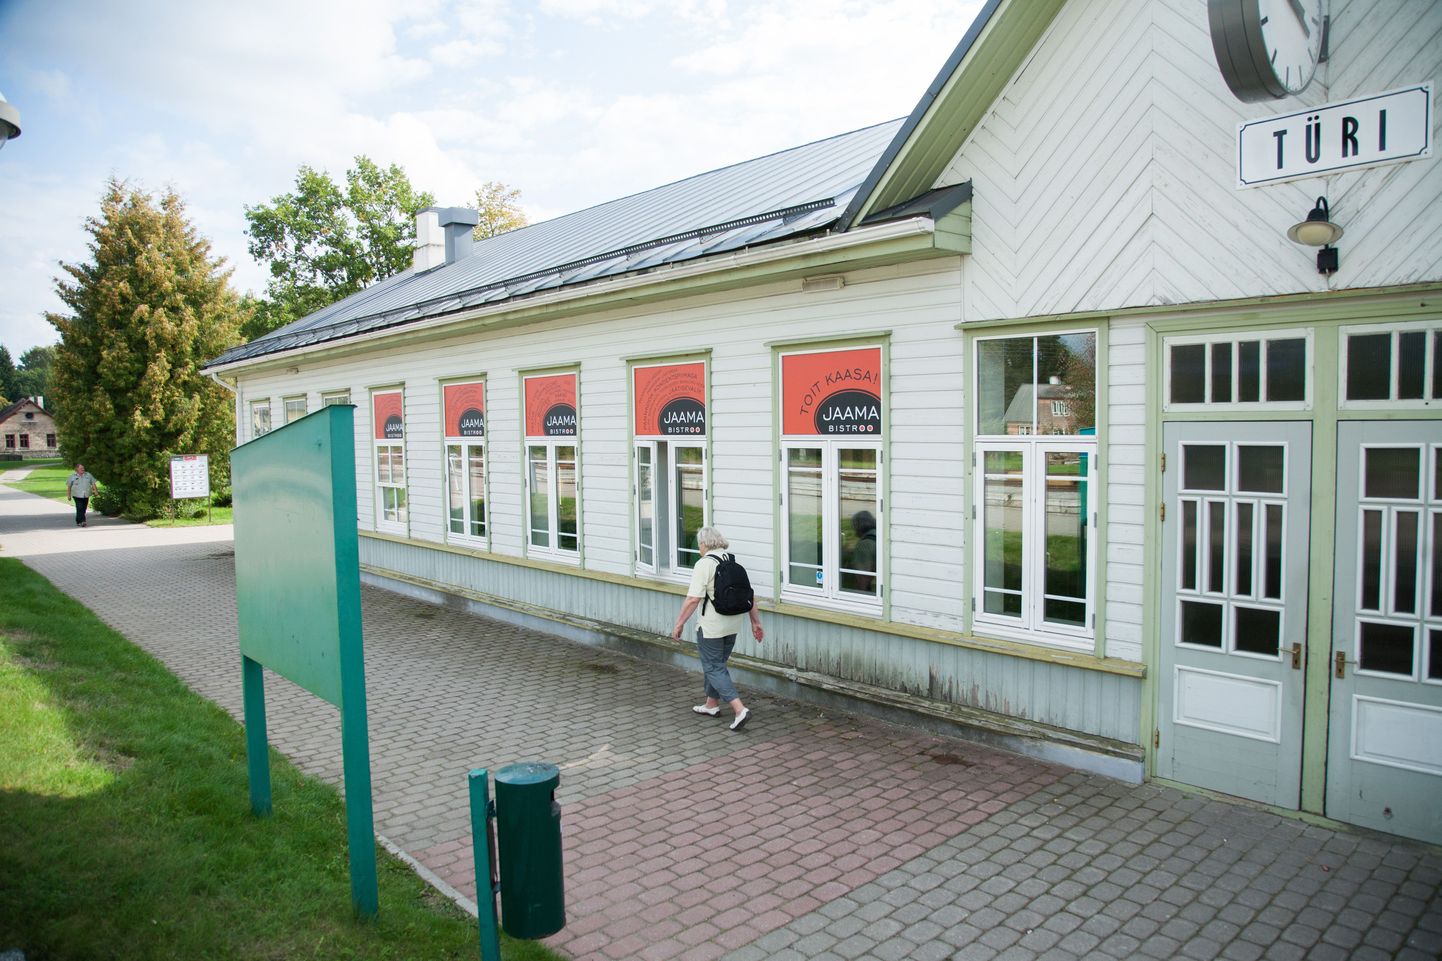 Jaama bistroo Türi raudteejaamas.
DMITRI KOTJUH, JÄRVA TEATAJA/SCANPIX